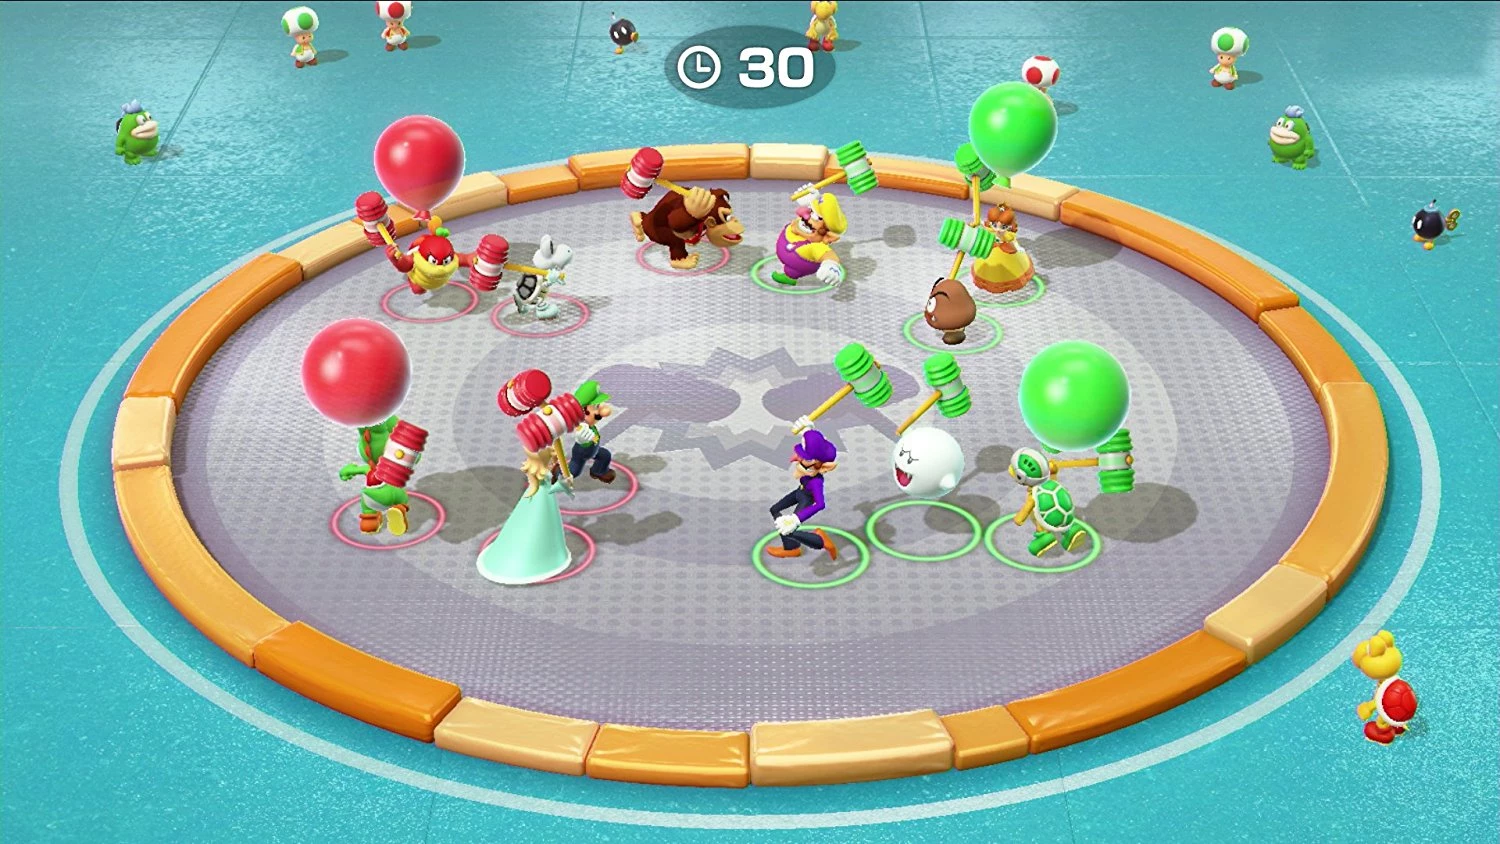 Super Mario Party voor de Nintendo Switch kopen op nedgame.nl